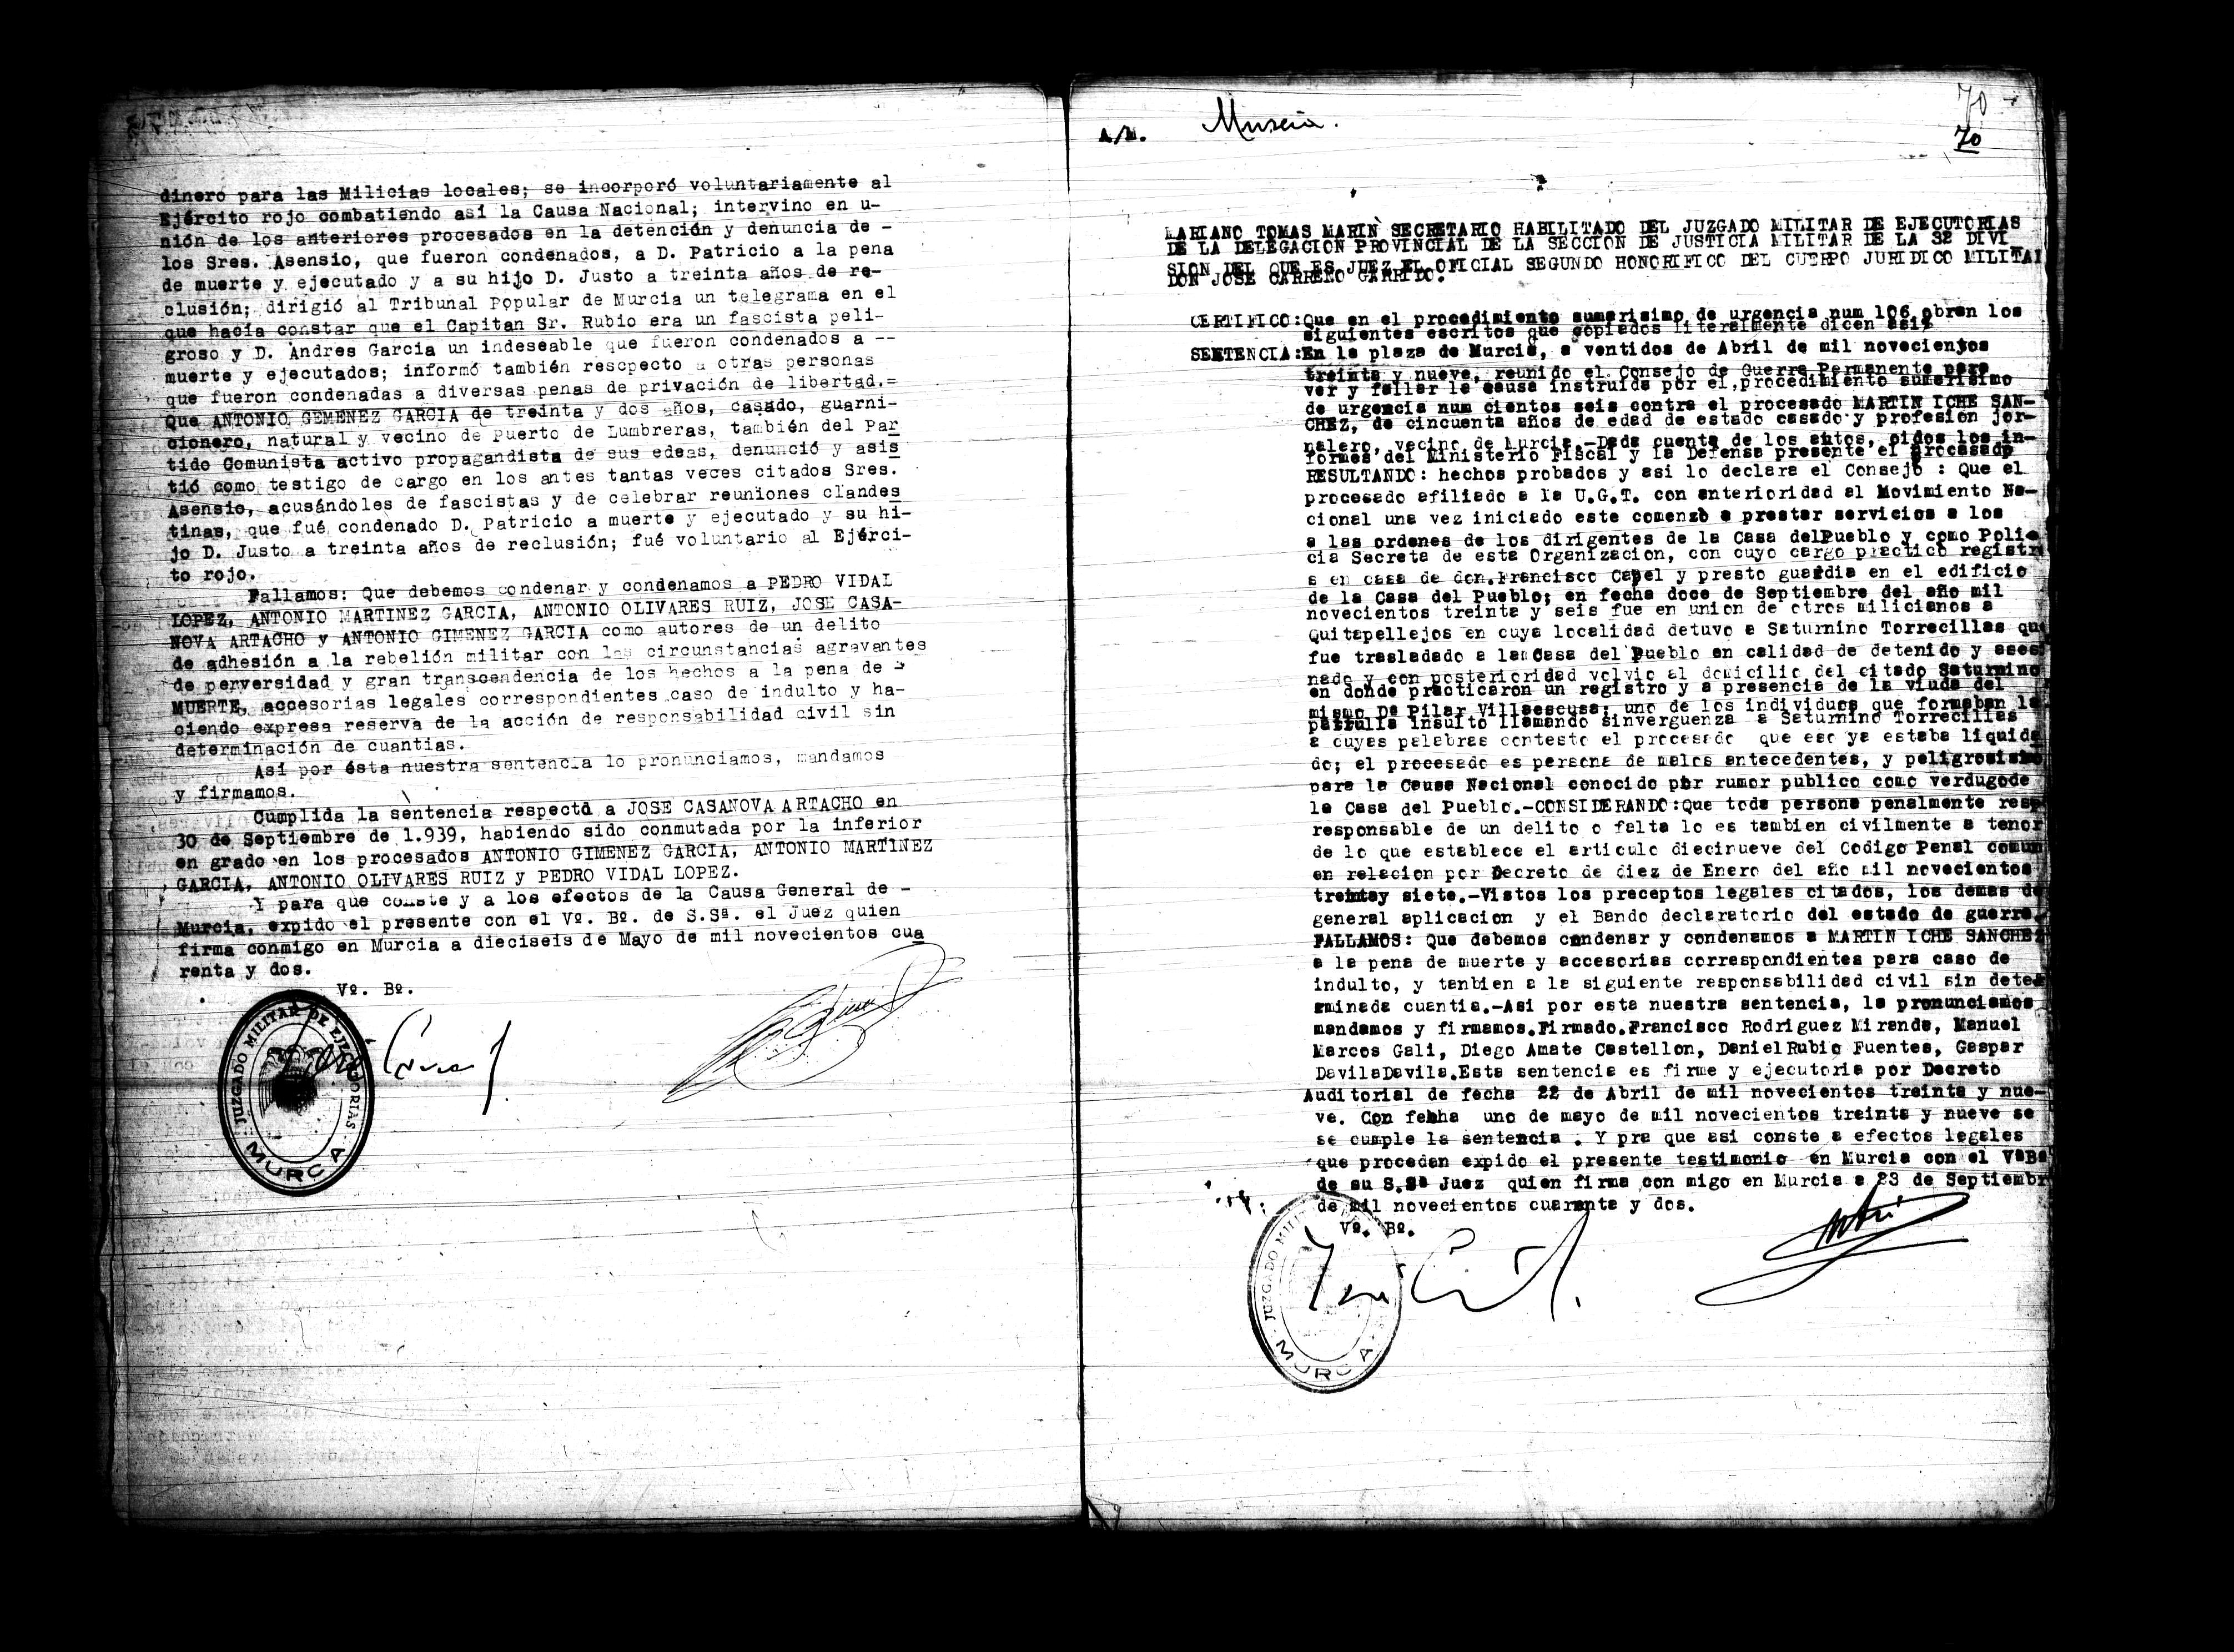 Certificado de la sentencia pronunciada contra Martín Iche Sánchez, causa 106, el 22 de abril de 1939 en Murcia.